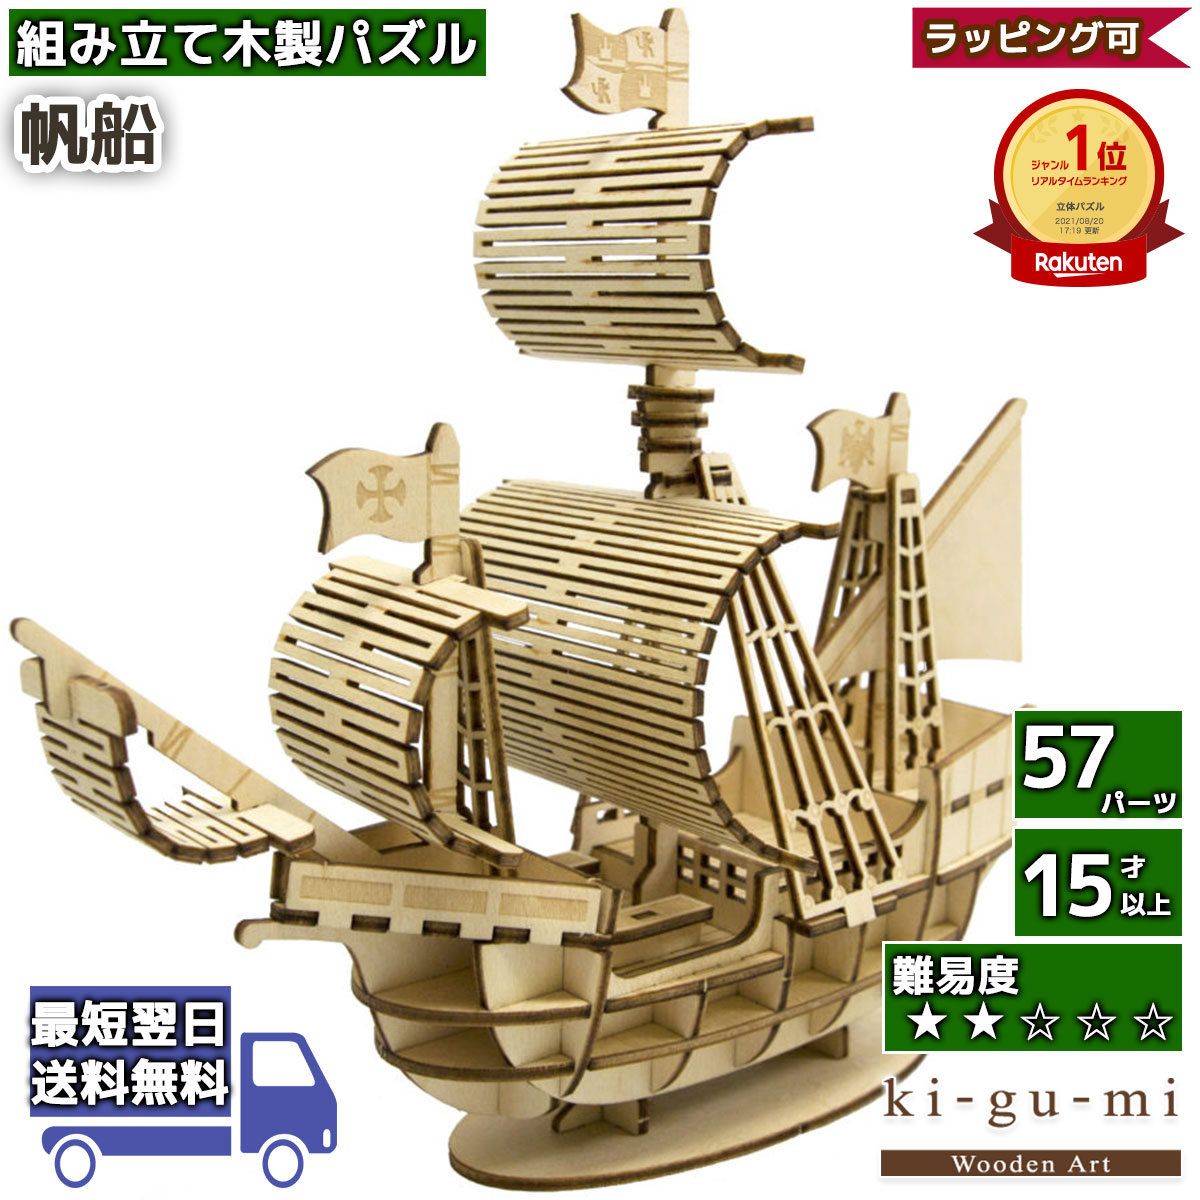 工作キット 帆船 kigumi エーゾーン ウッドパズル 立体パズル 木製 大人 手作り 自由研究 キット 工作 父の日ギフト プレゼント